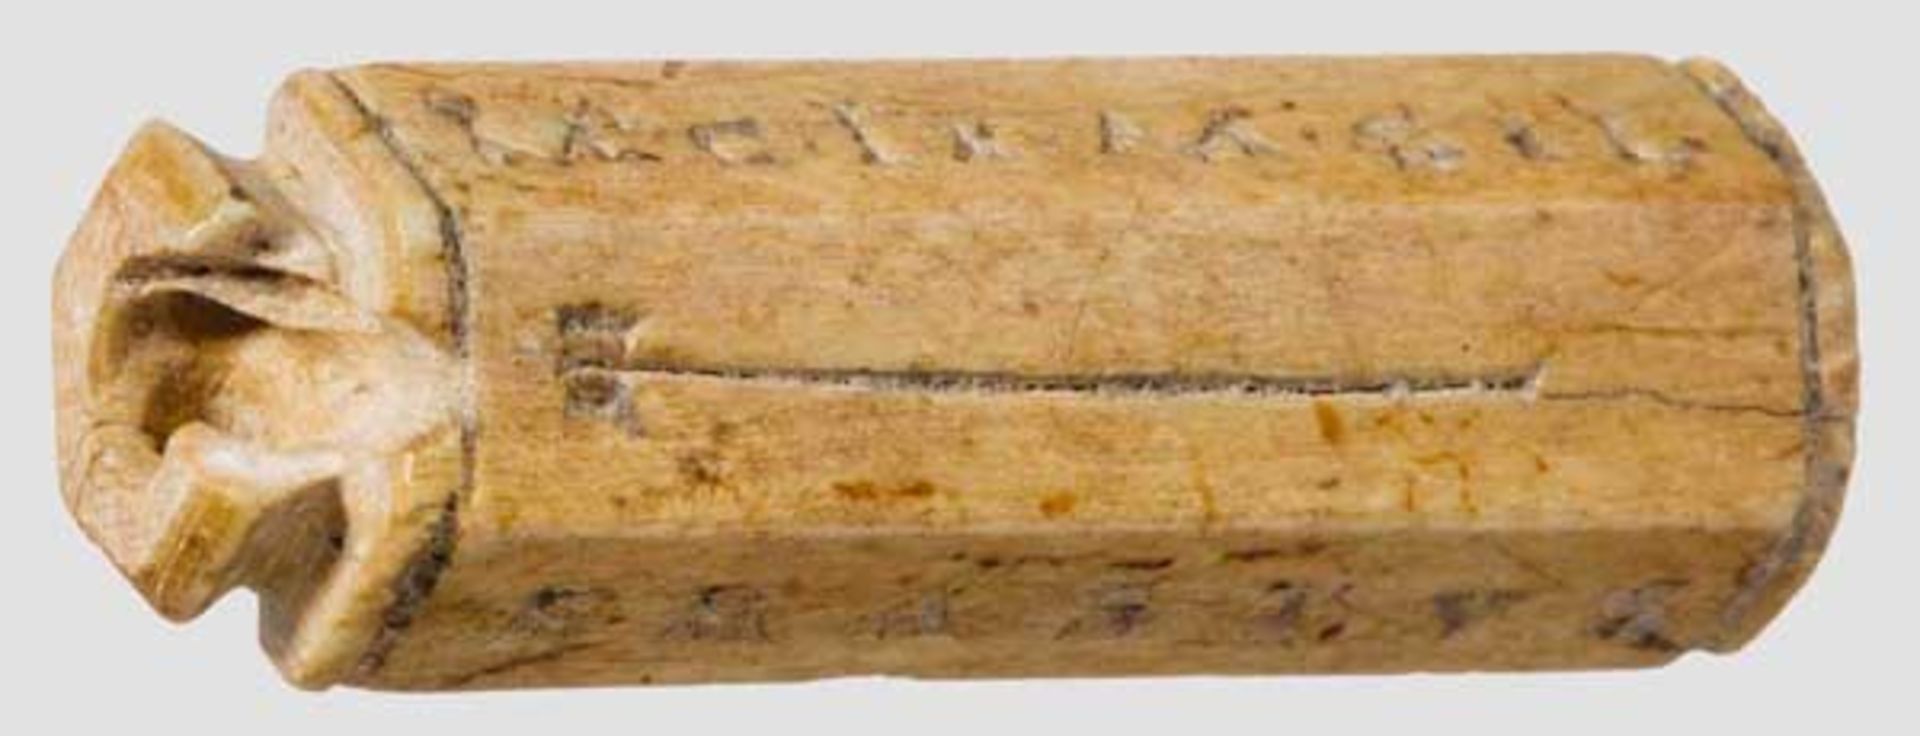 Tessera gladiatoria aus Bein, römisch, augusteisch, 25 v. Chr. Sechsfach facettierte Marke aus Bein,